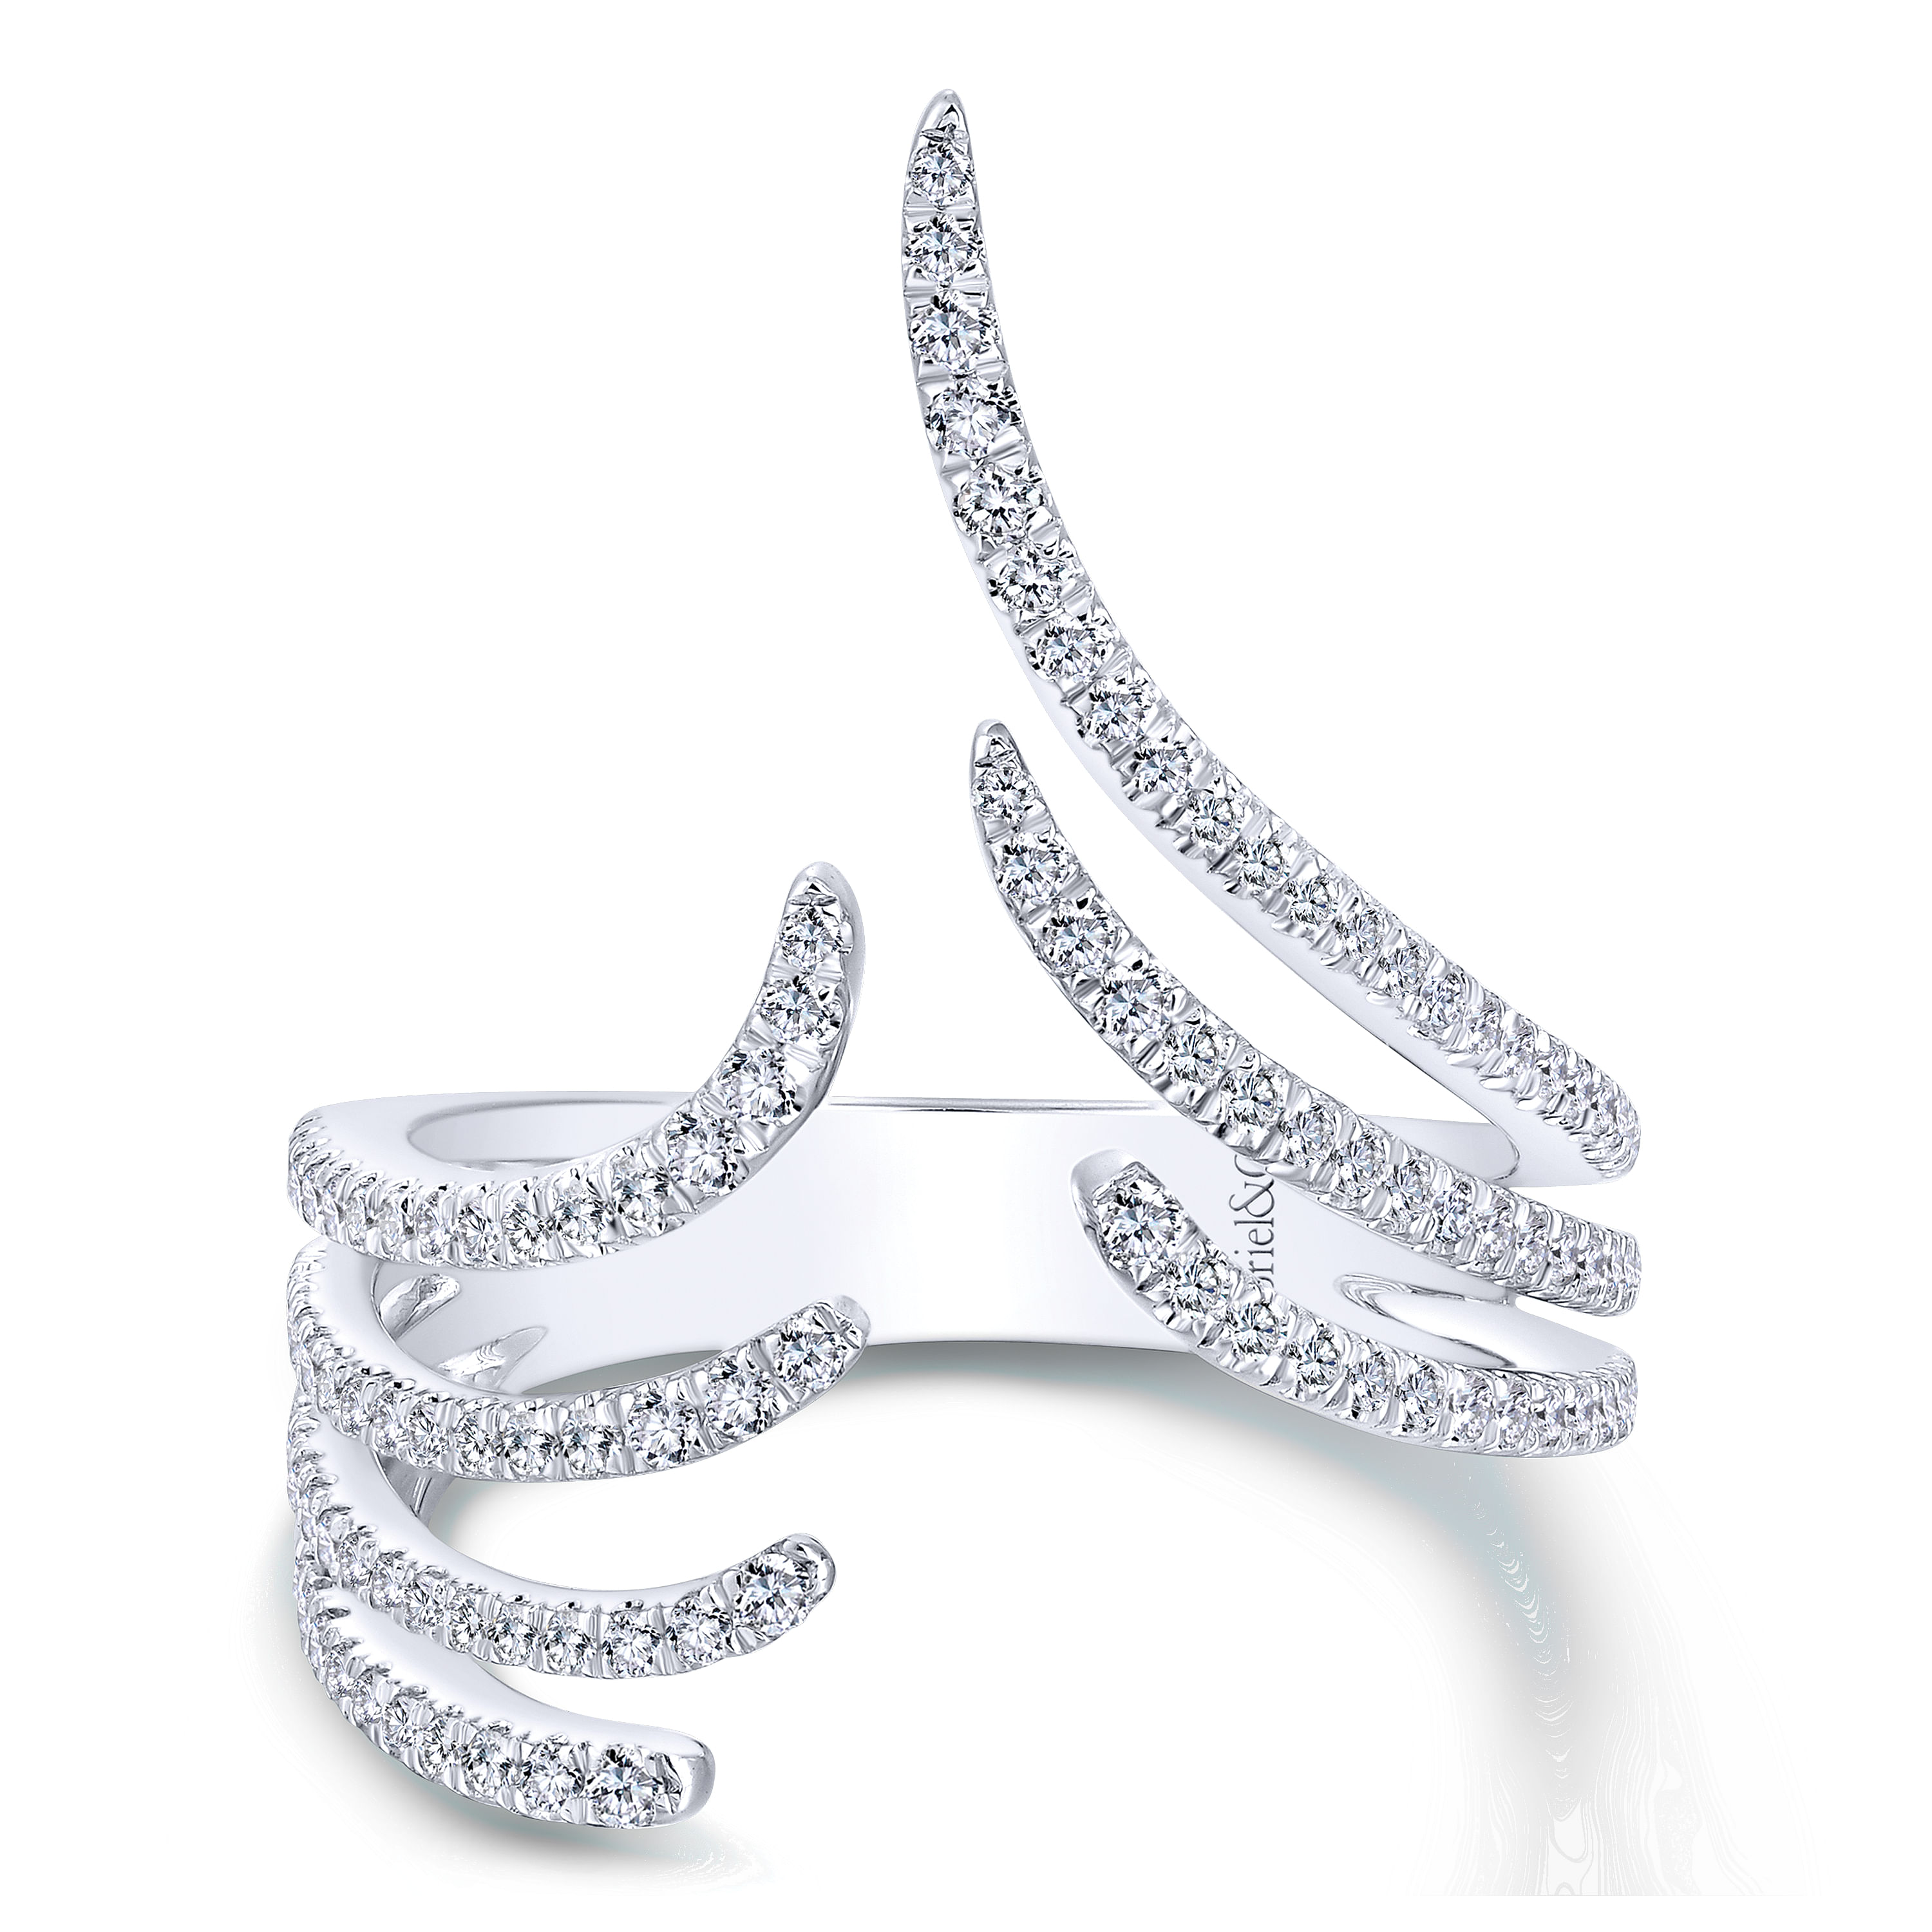 14K White Gold Fashion Ladies Ring